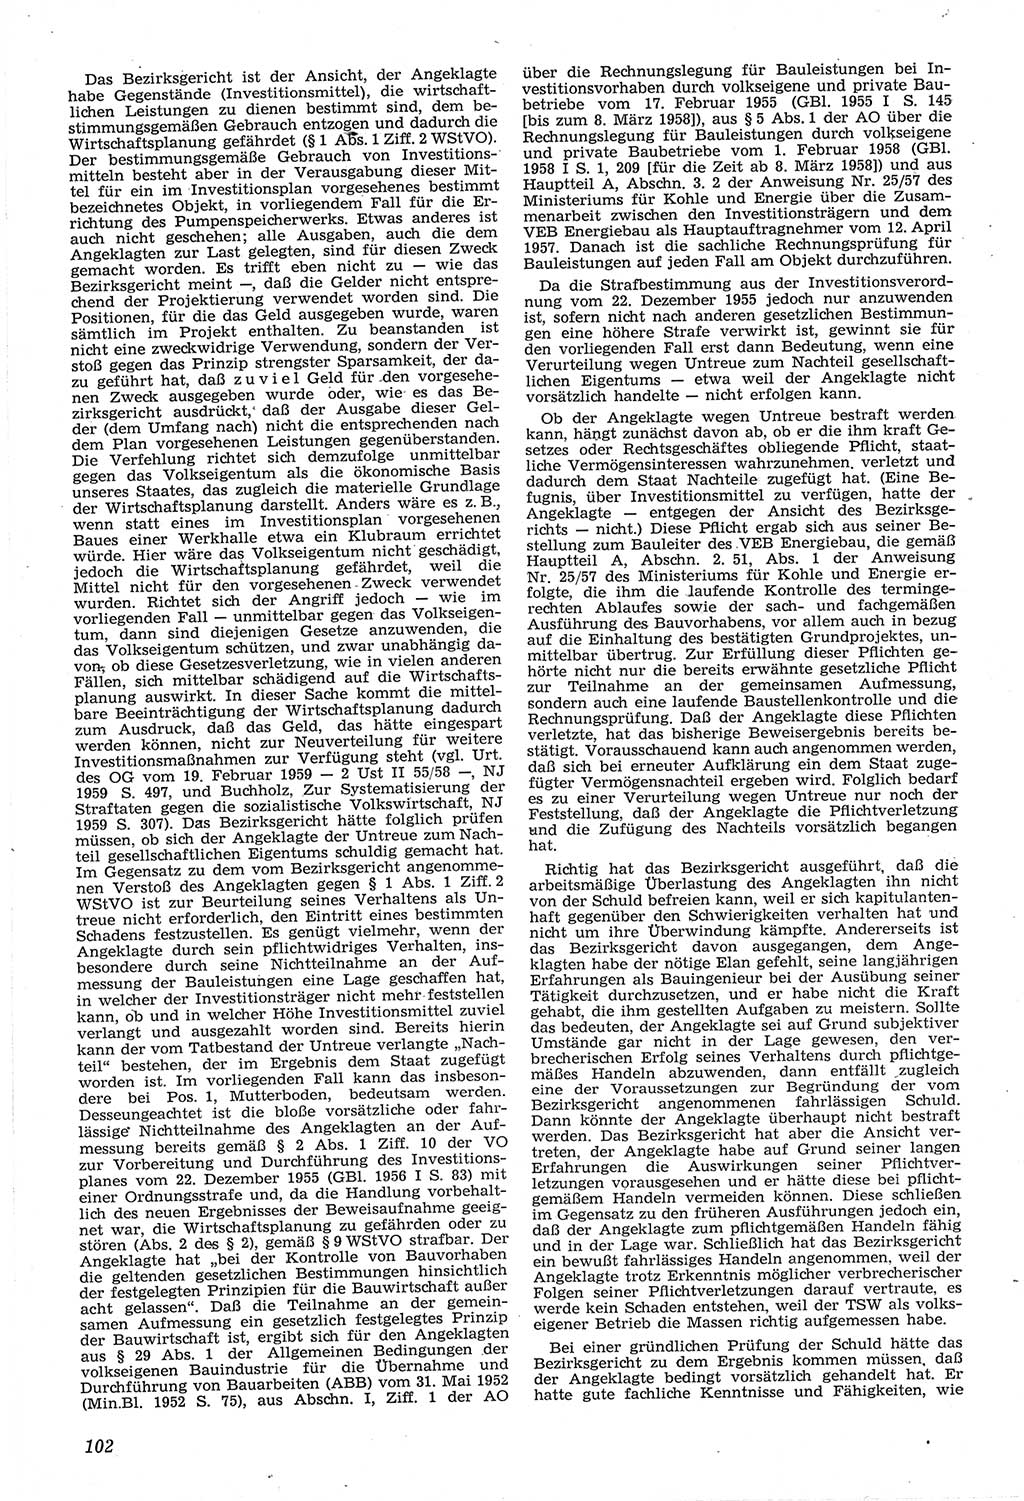 Neue Justiz (NJ), Zeitschrift für Recht und Rechtswissenschaft [Deutsche Demokratische Republik (DDR)], 14. Jahrgang 1960, Seite 102 (NJ DDR 1960, S. 102)